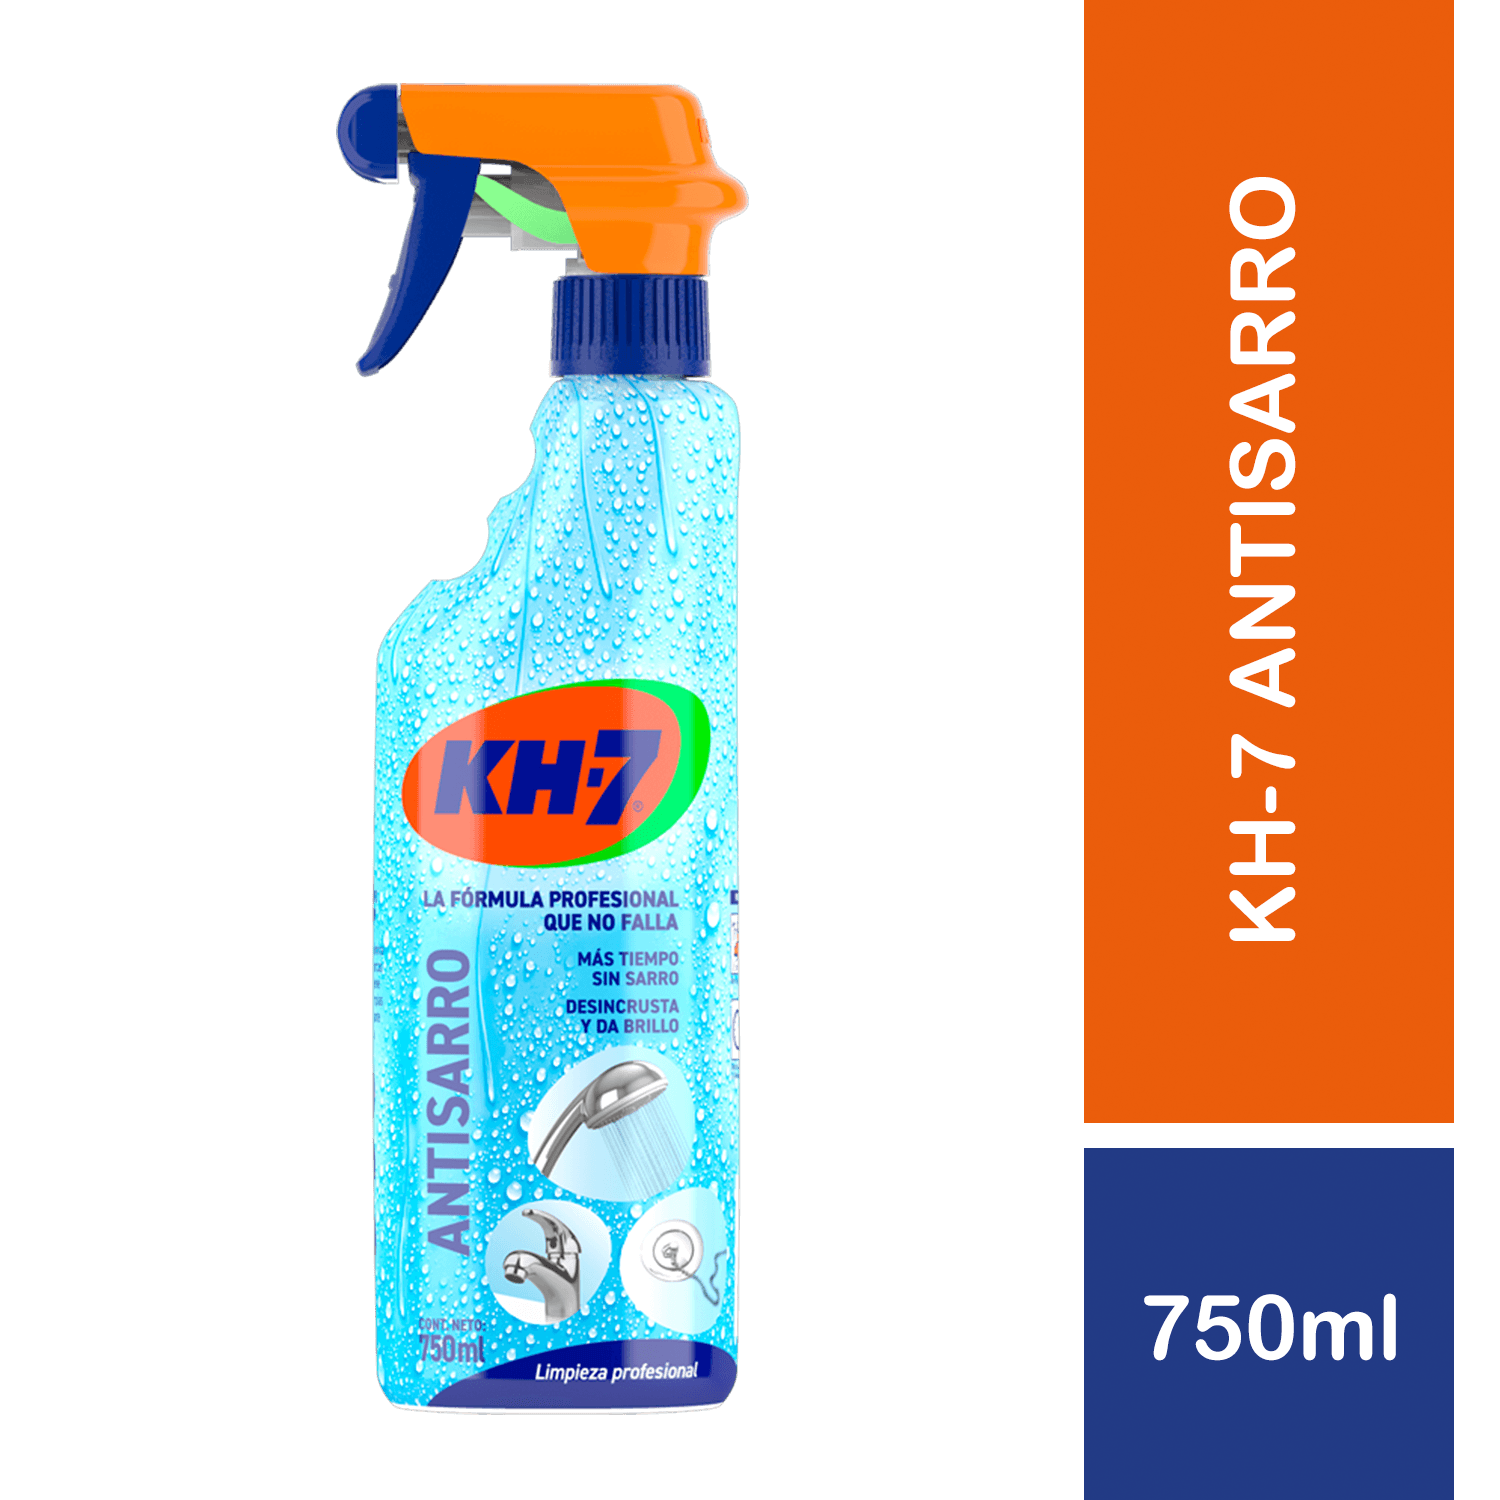 Producto de limpieza profesional multisuperficies y multiusos - KH7